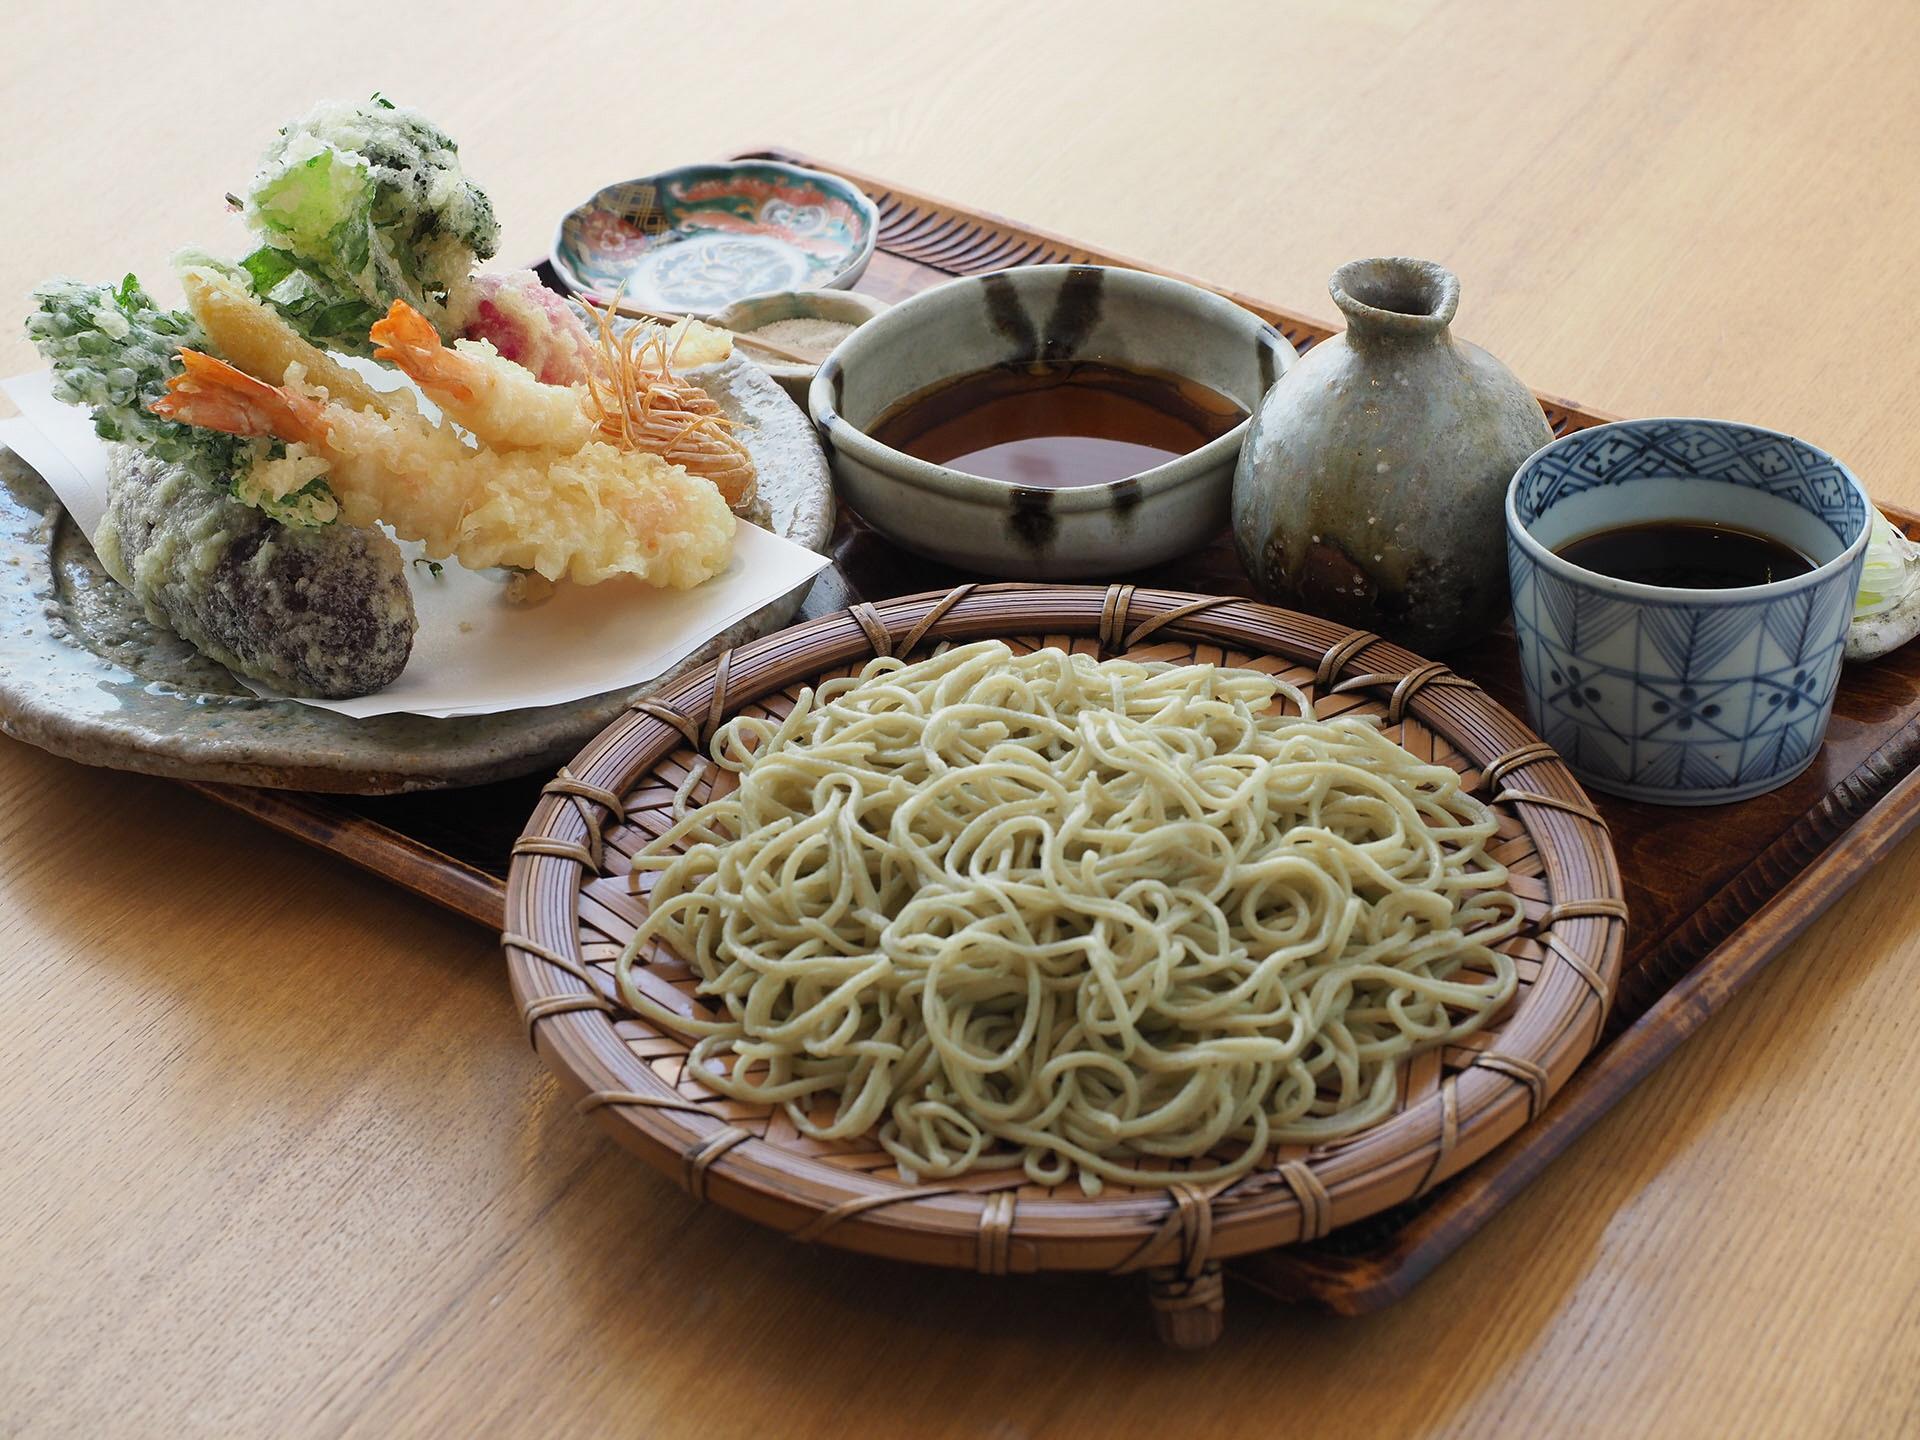 ざるに盛られた蕎麦、お皿に盛られたエビや野菜の天ぷら、つゆが一緒にお盆に盛られている写真